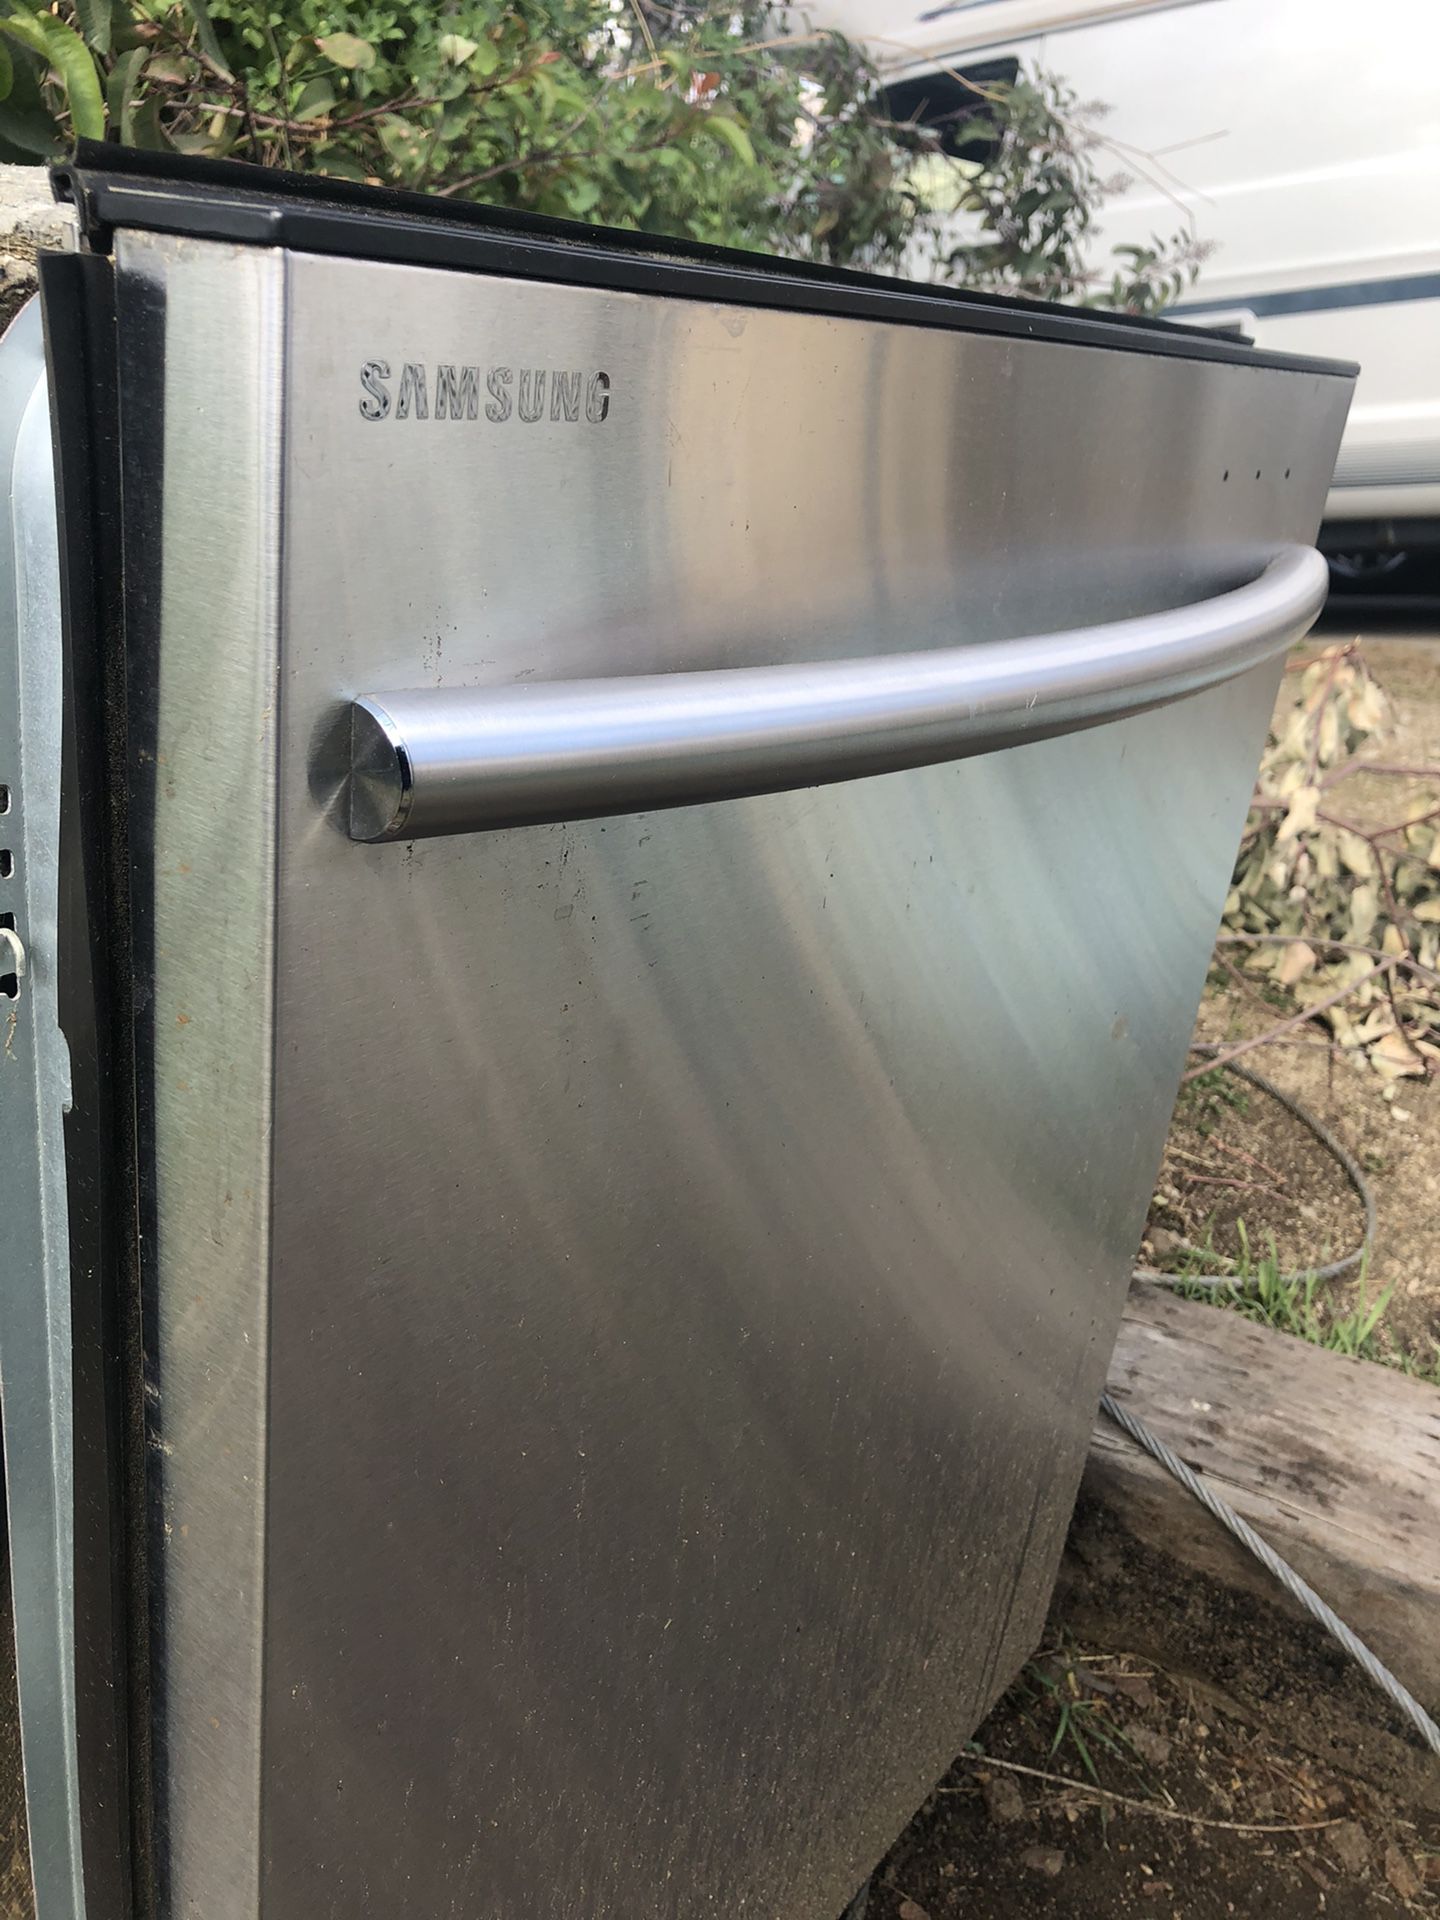 Samsung dish washer